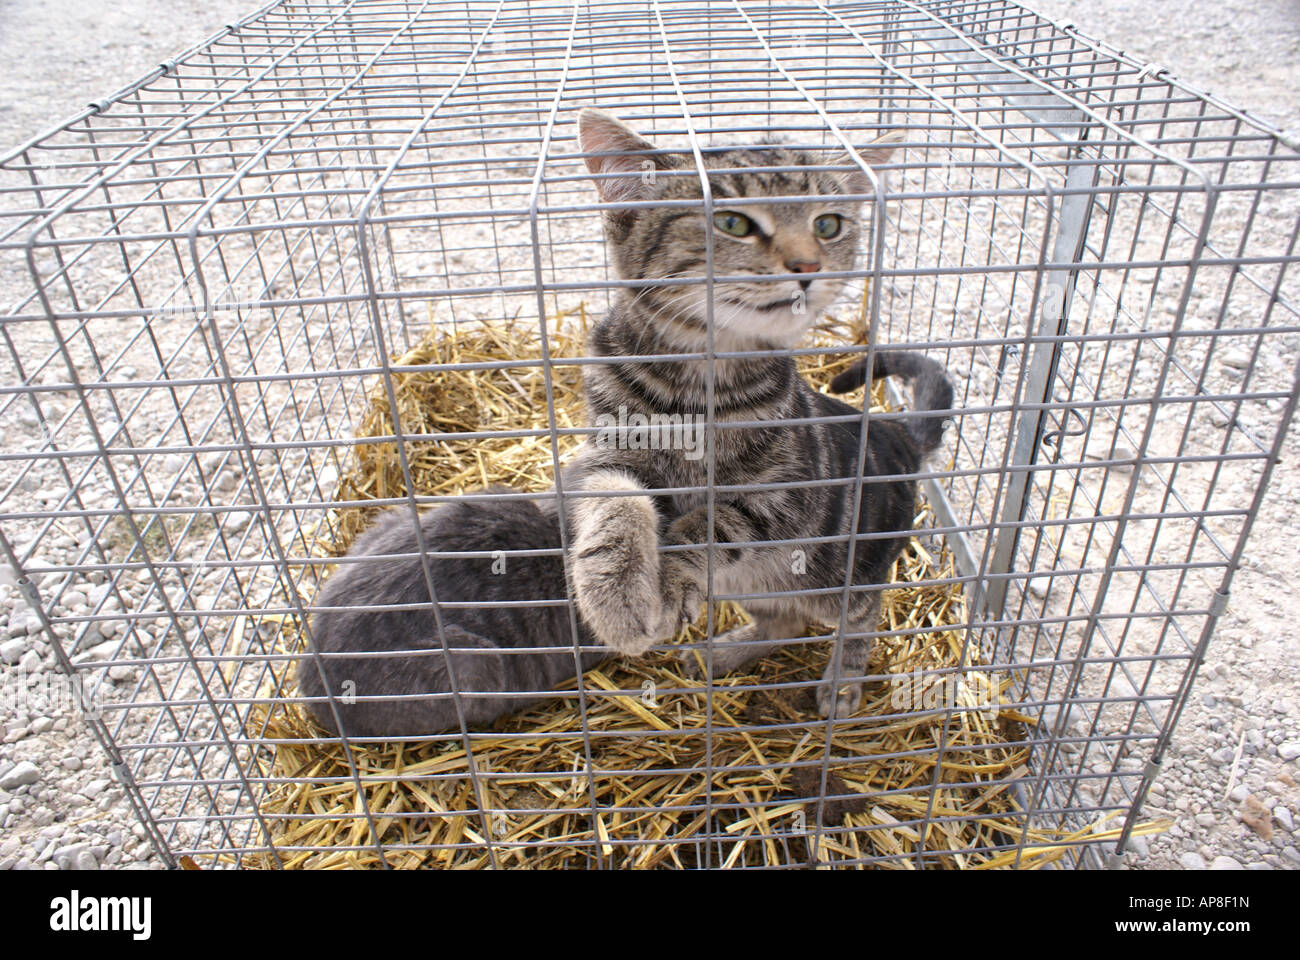 Gatti in gabbia immagini e fotografie stock ad alta risoluzione - Alamy